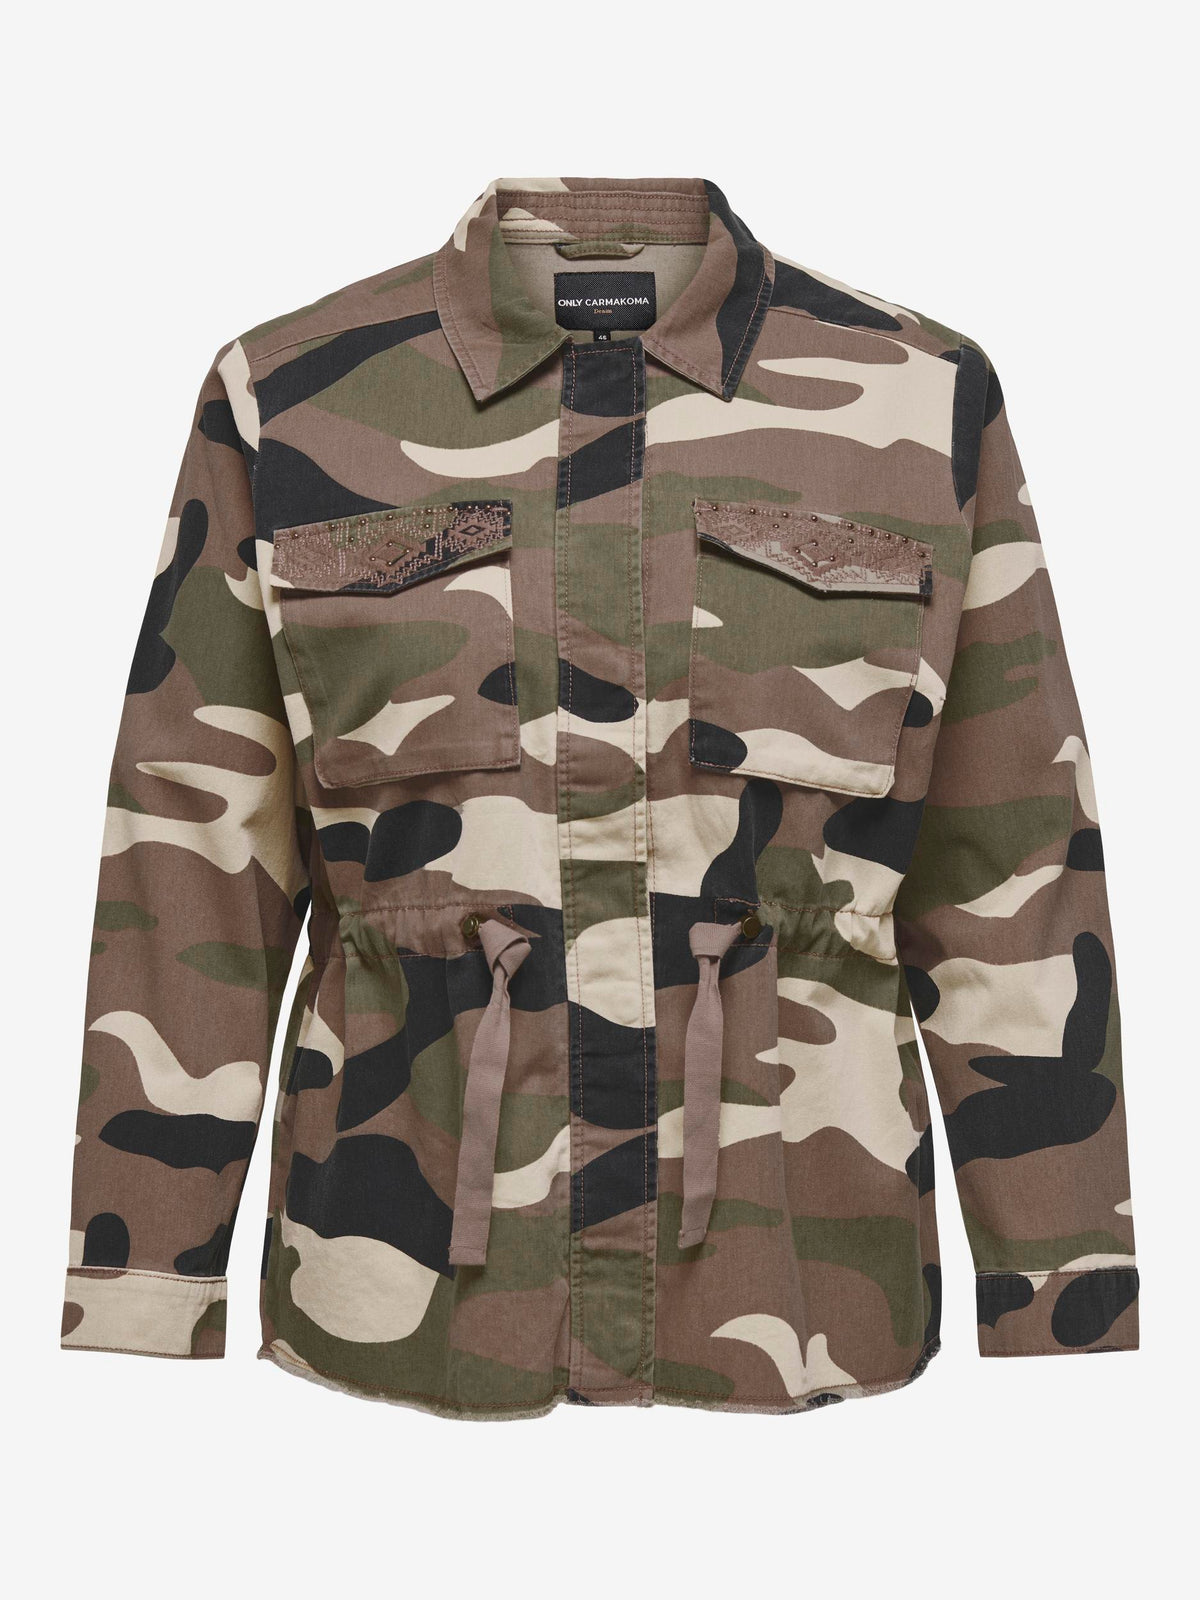 Only Carmakoma Gekko Camouflage Jacket